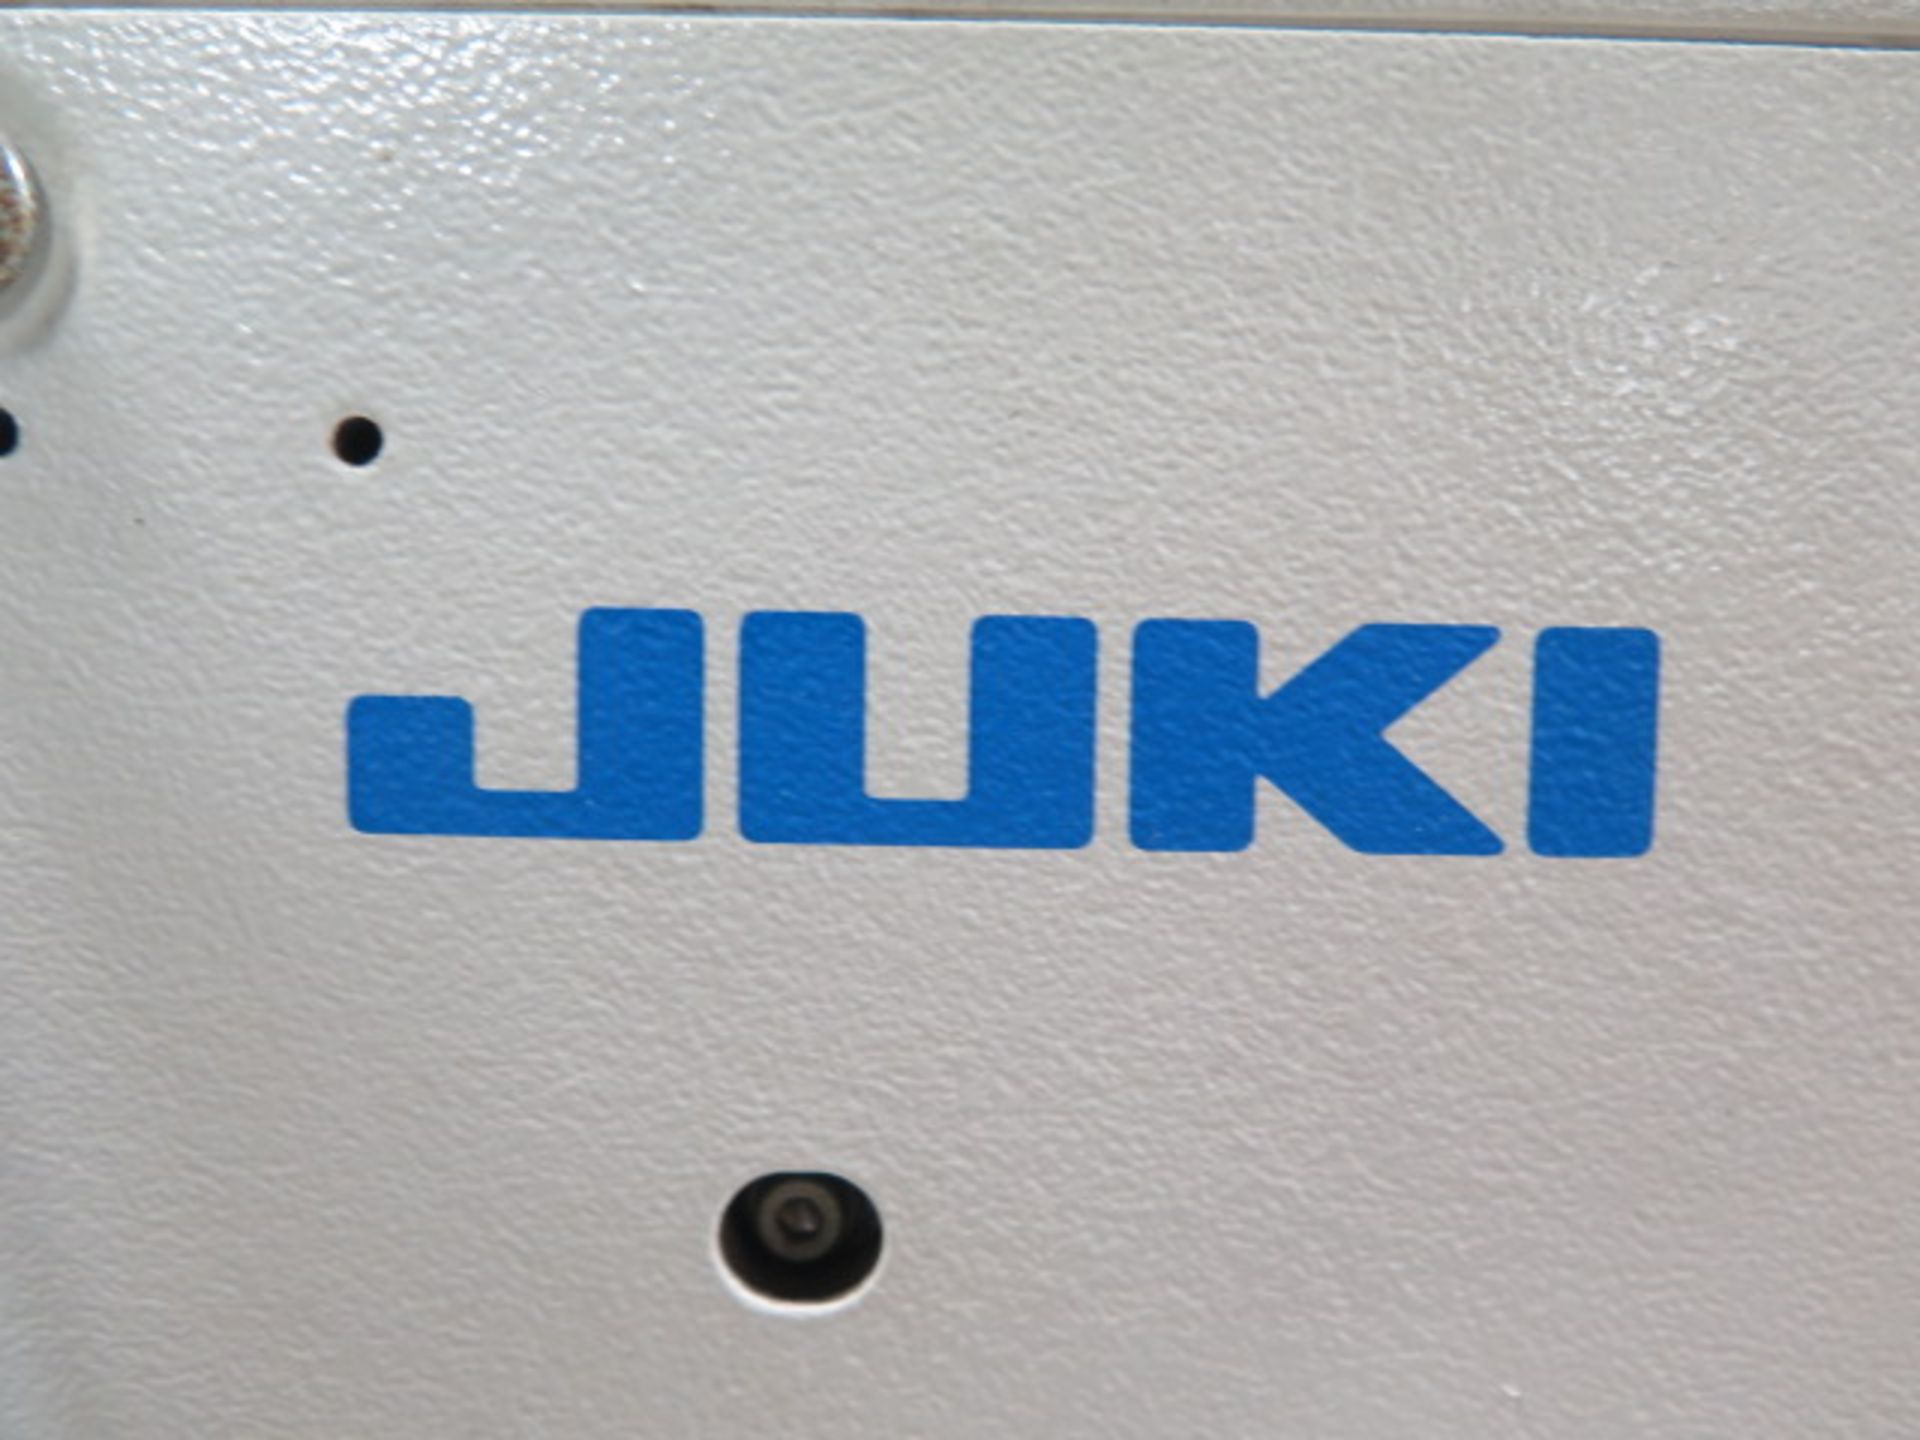 Juki AMS-210EN Industrial Sewing Machine s/n 2A3DF00034 w/ Juki IP-420 Controls, SOLD AS IS - Image 8 of 8